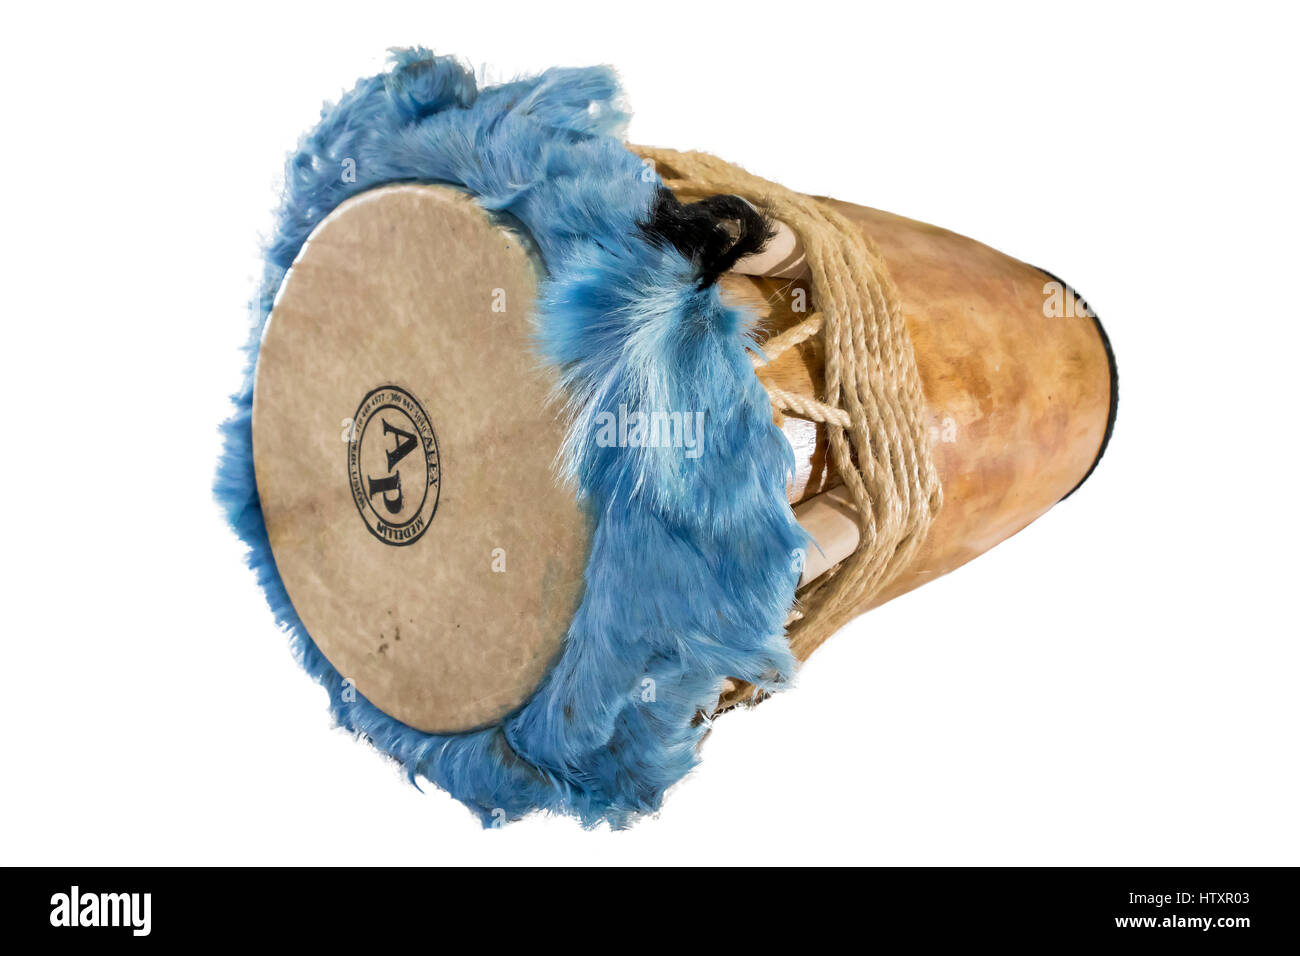 Freudige Trommel, Tambor Alegre. Percussion-Instrument. Traditionelle Volksinstrumente von der Atlantikküste Kolumbiens verwendet, um Rhythmen wie Cumbia interpretieren, Stockfoto